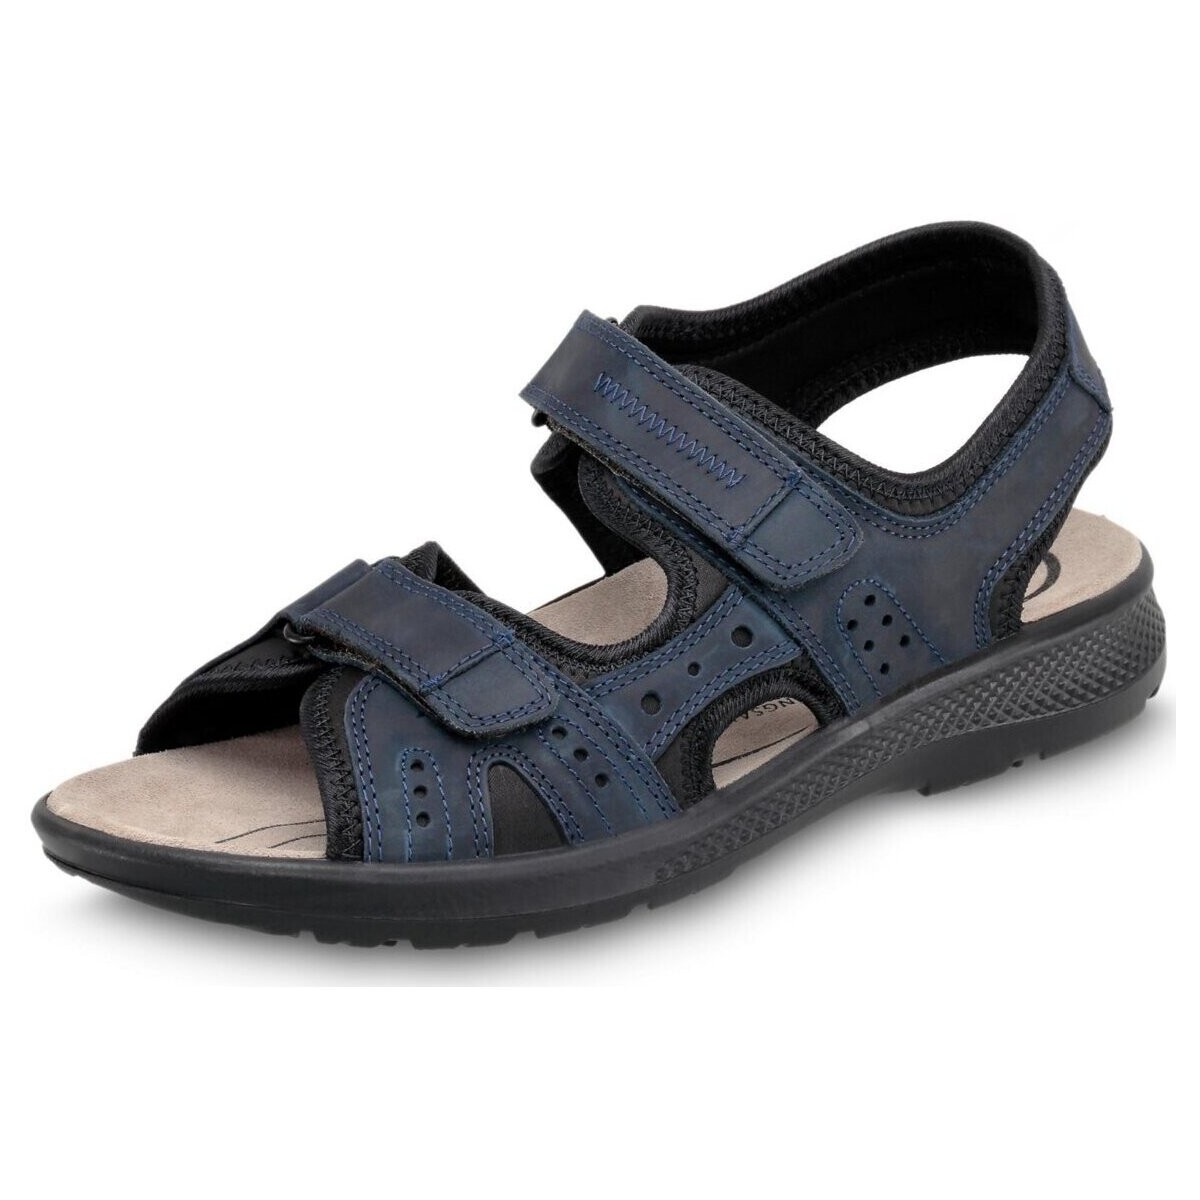 Schoenen Heren Sandalen / Open schoenen Jomos  Blauw